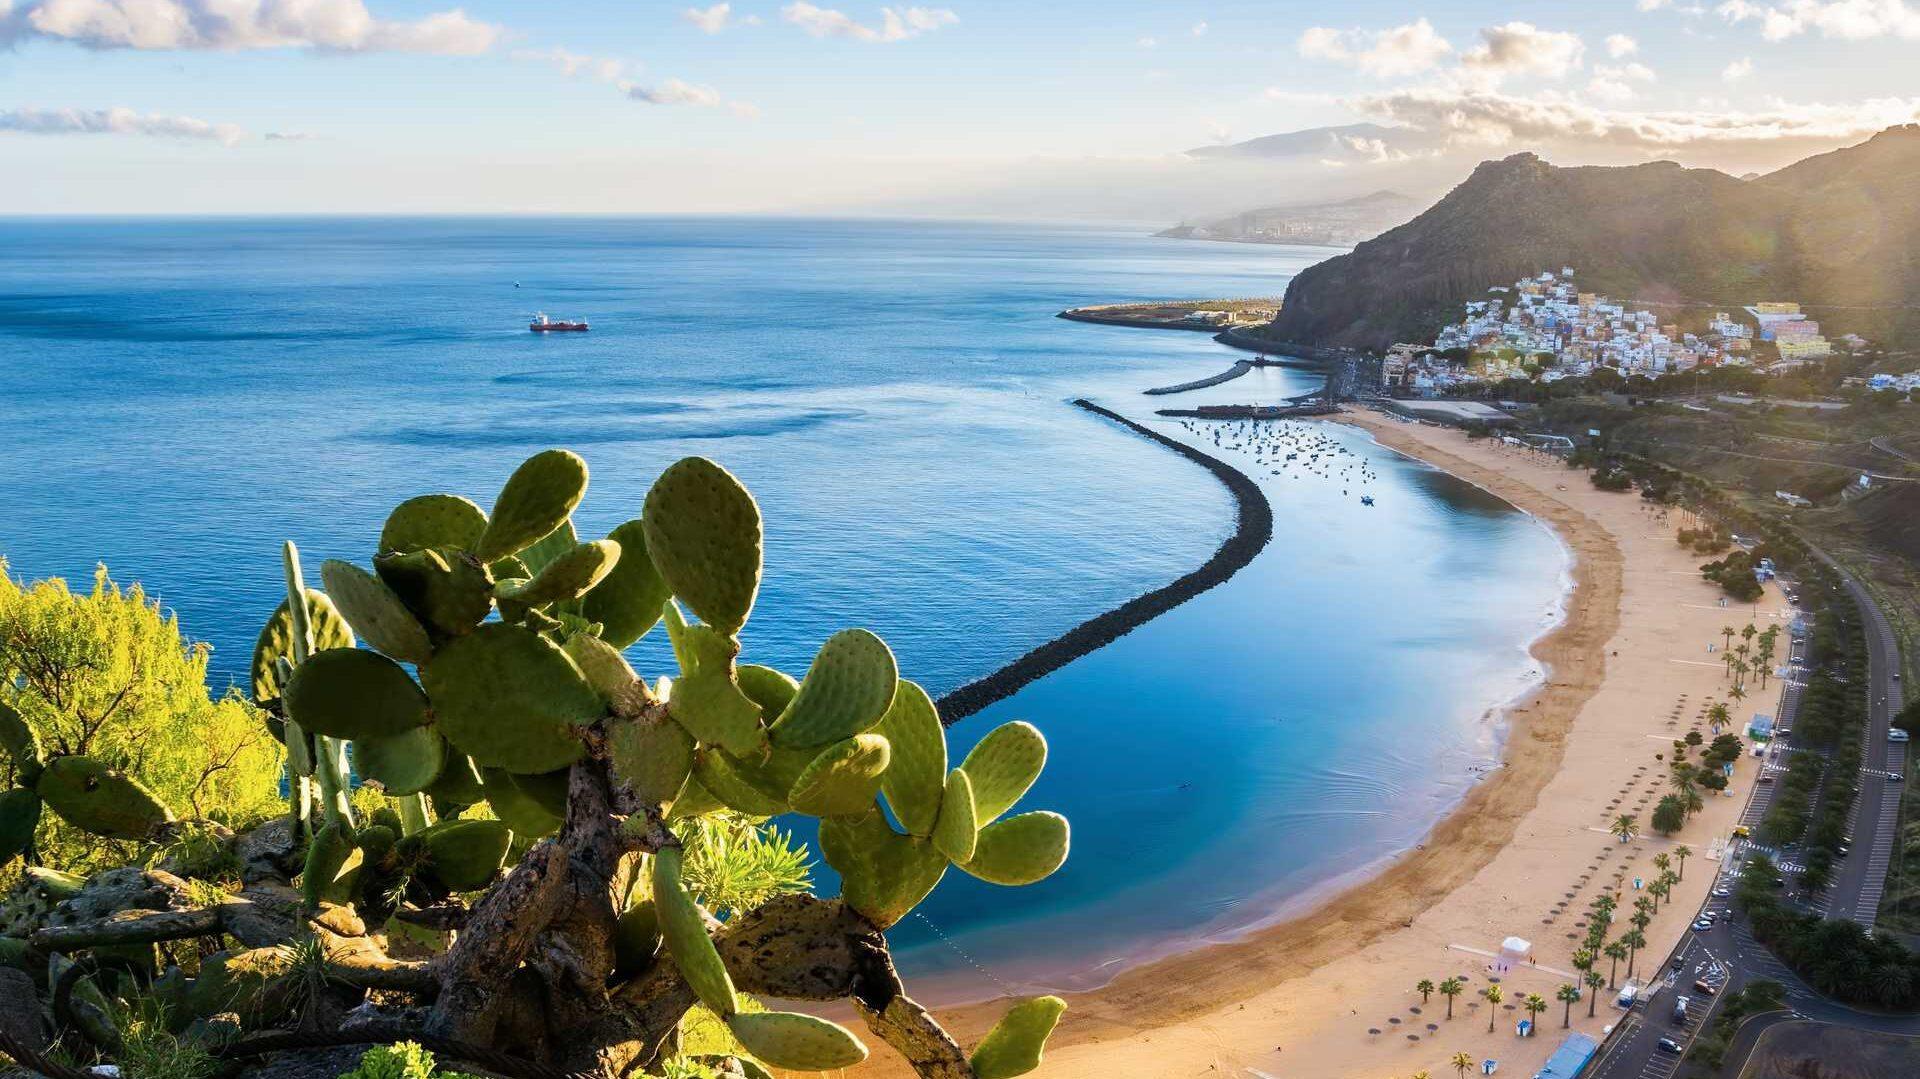 Bilde av strand og kaktus med fjell i bakgrunn på Tenerife. Vi har funnet frem billige restplasser og reiser til den populære øya som har gode temperaturer hele året, og som ligger på rundt 20 grader selv om vinteren.